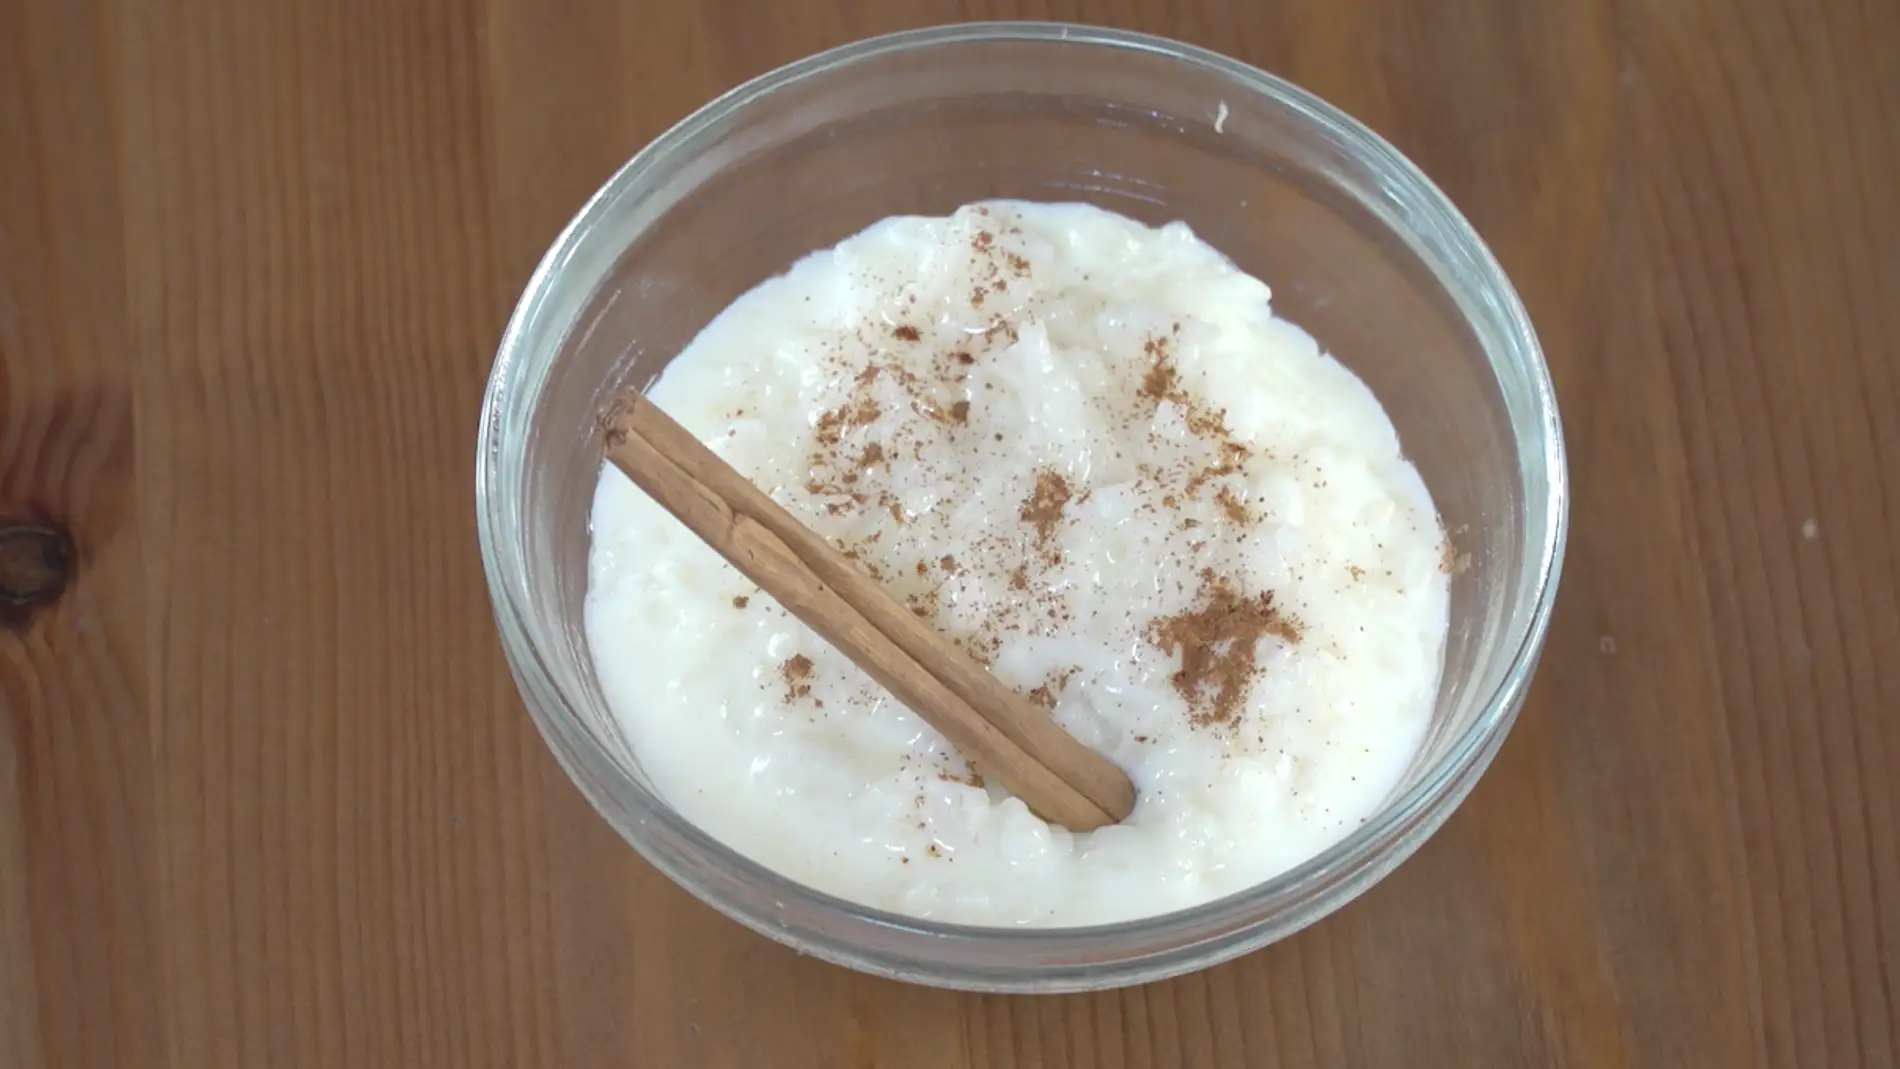 Un arroz con leche normal, pero hecho al microondas.